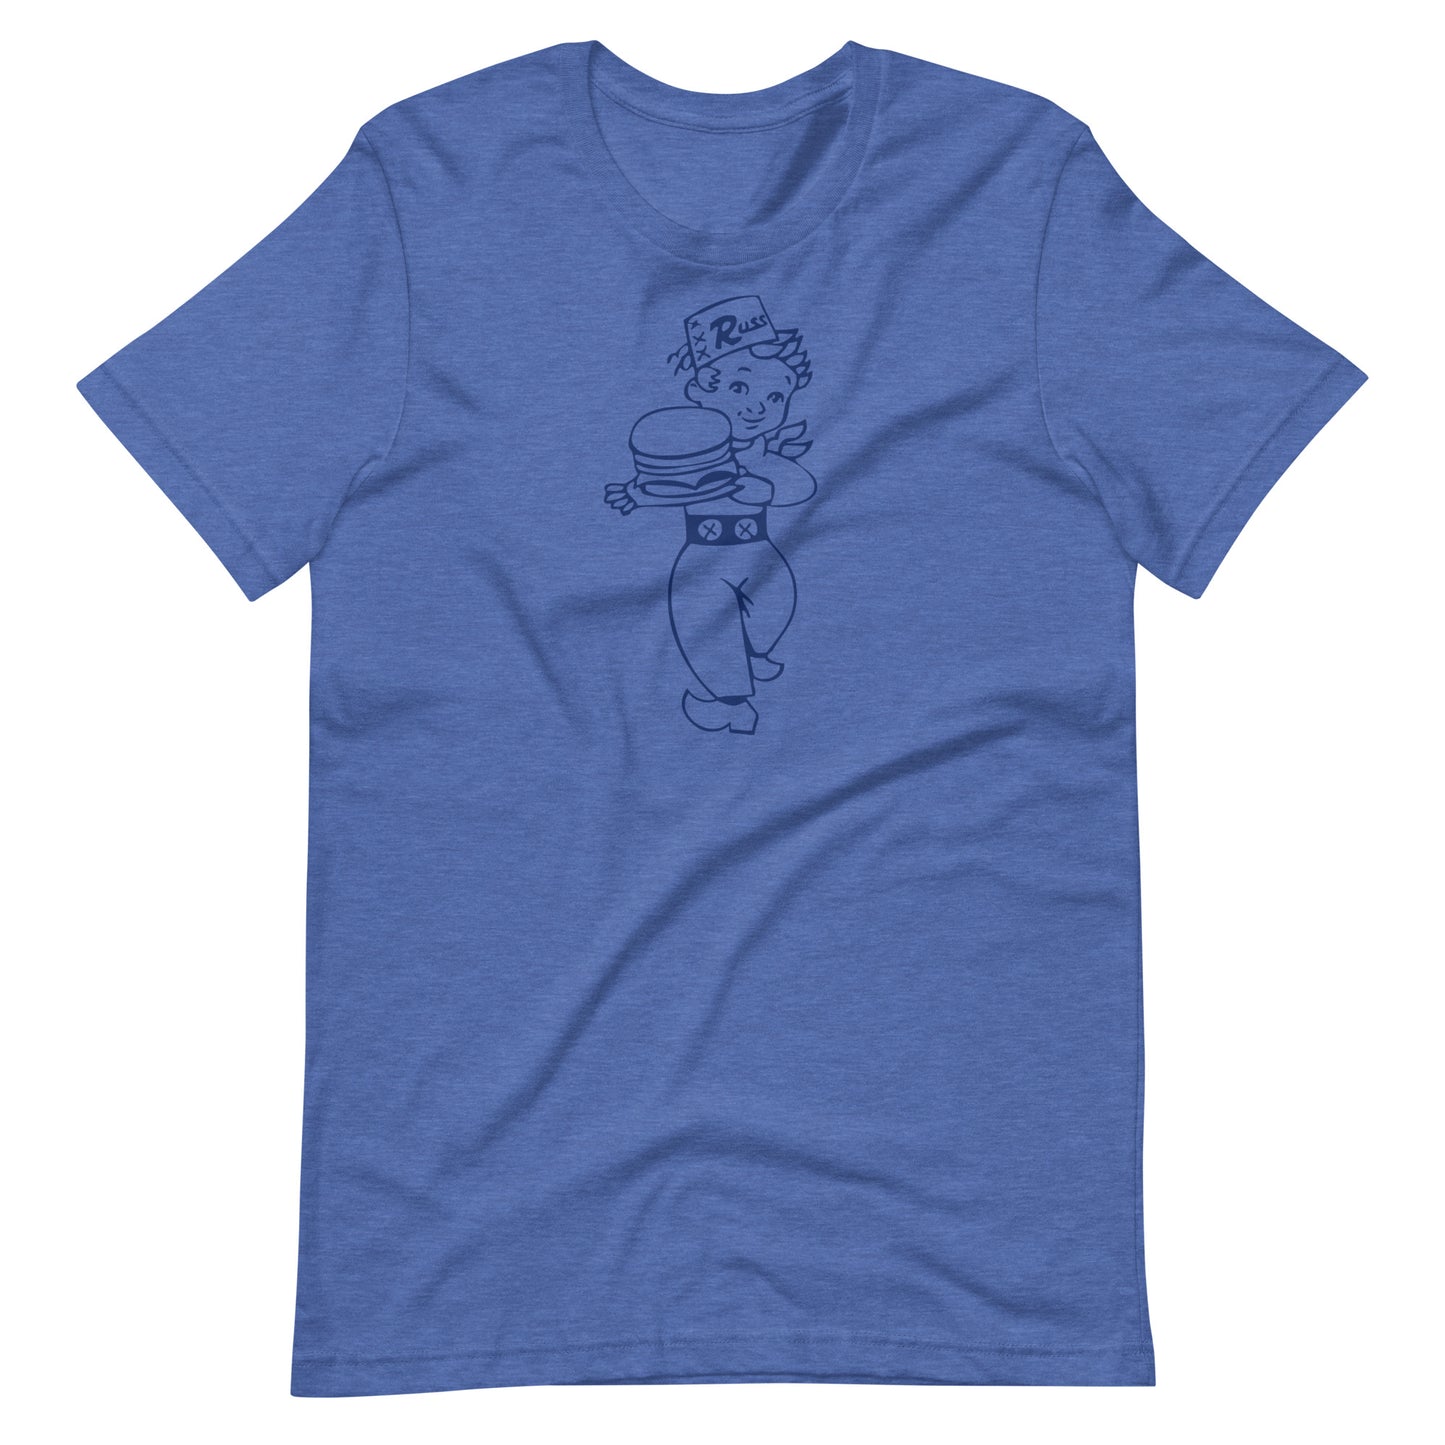 Russ Boy Navy T-shirt